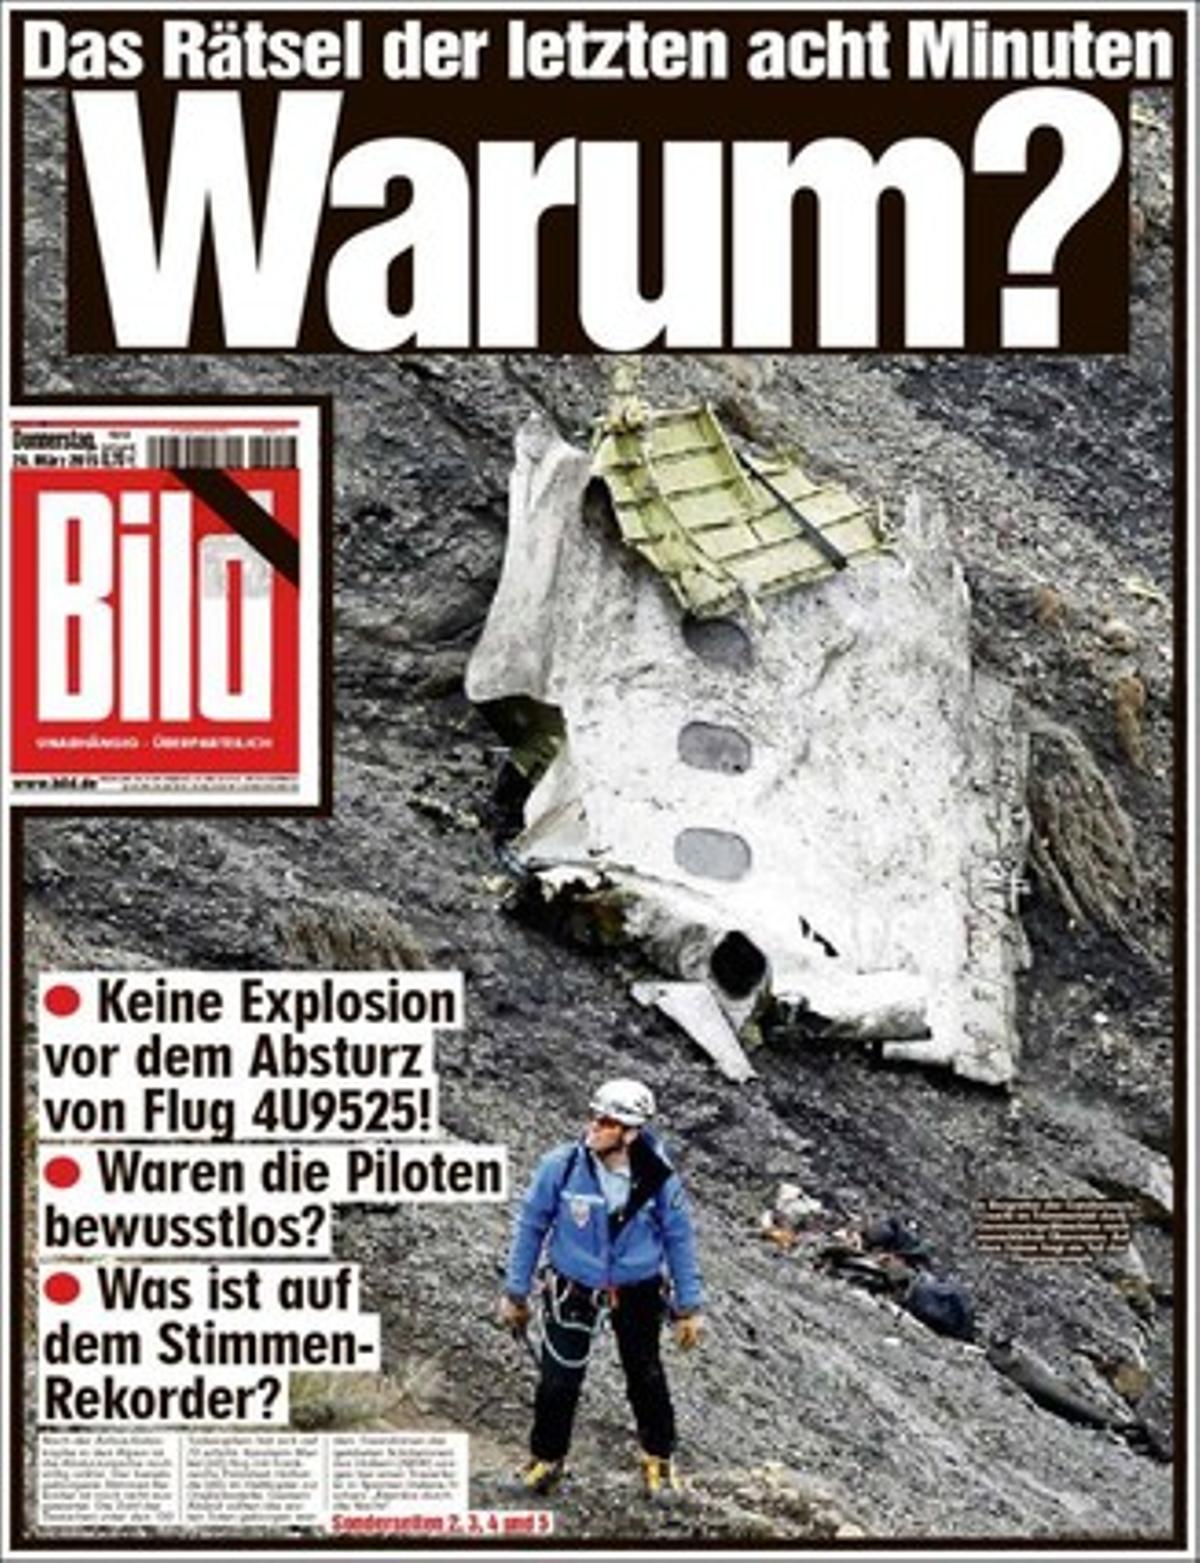 Portada del periódico alemán ’Bild’. 